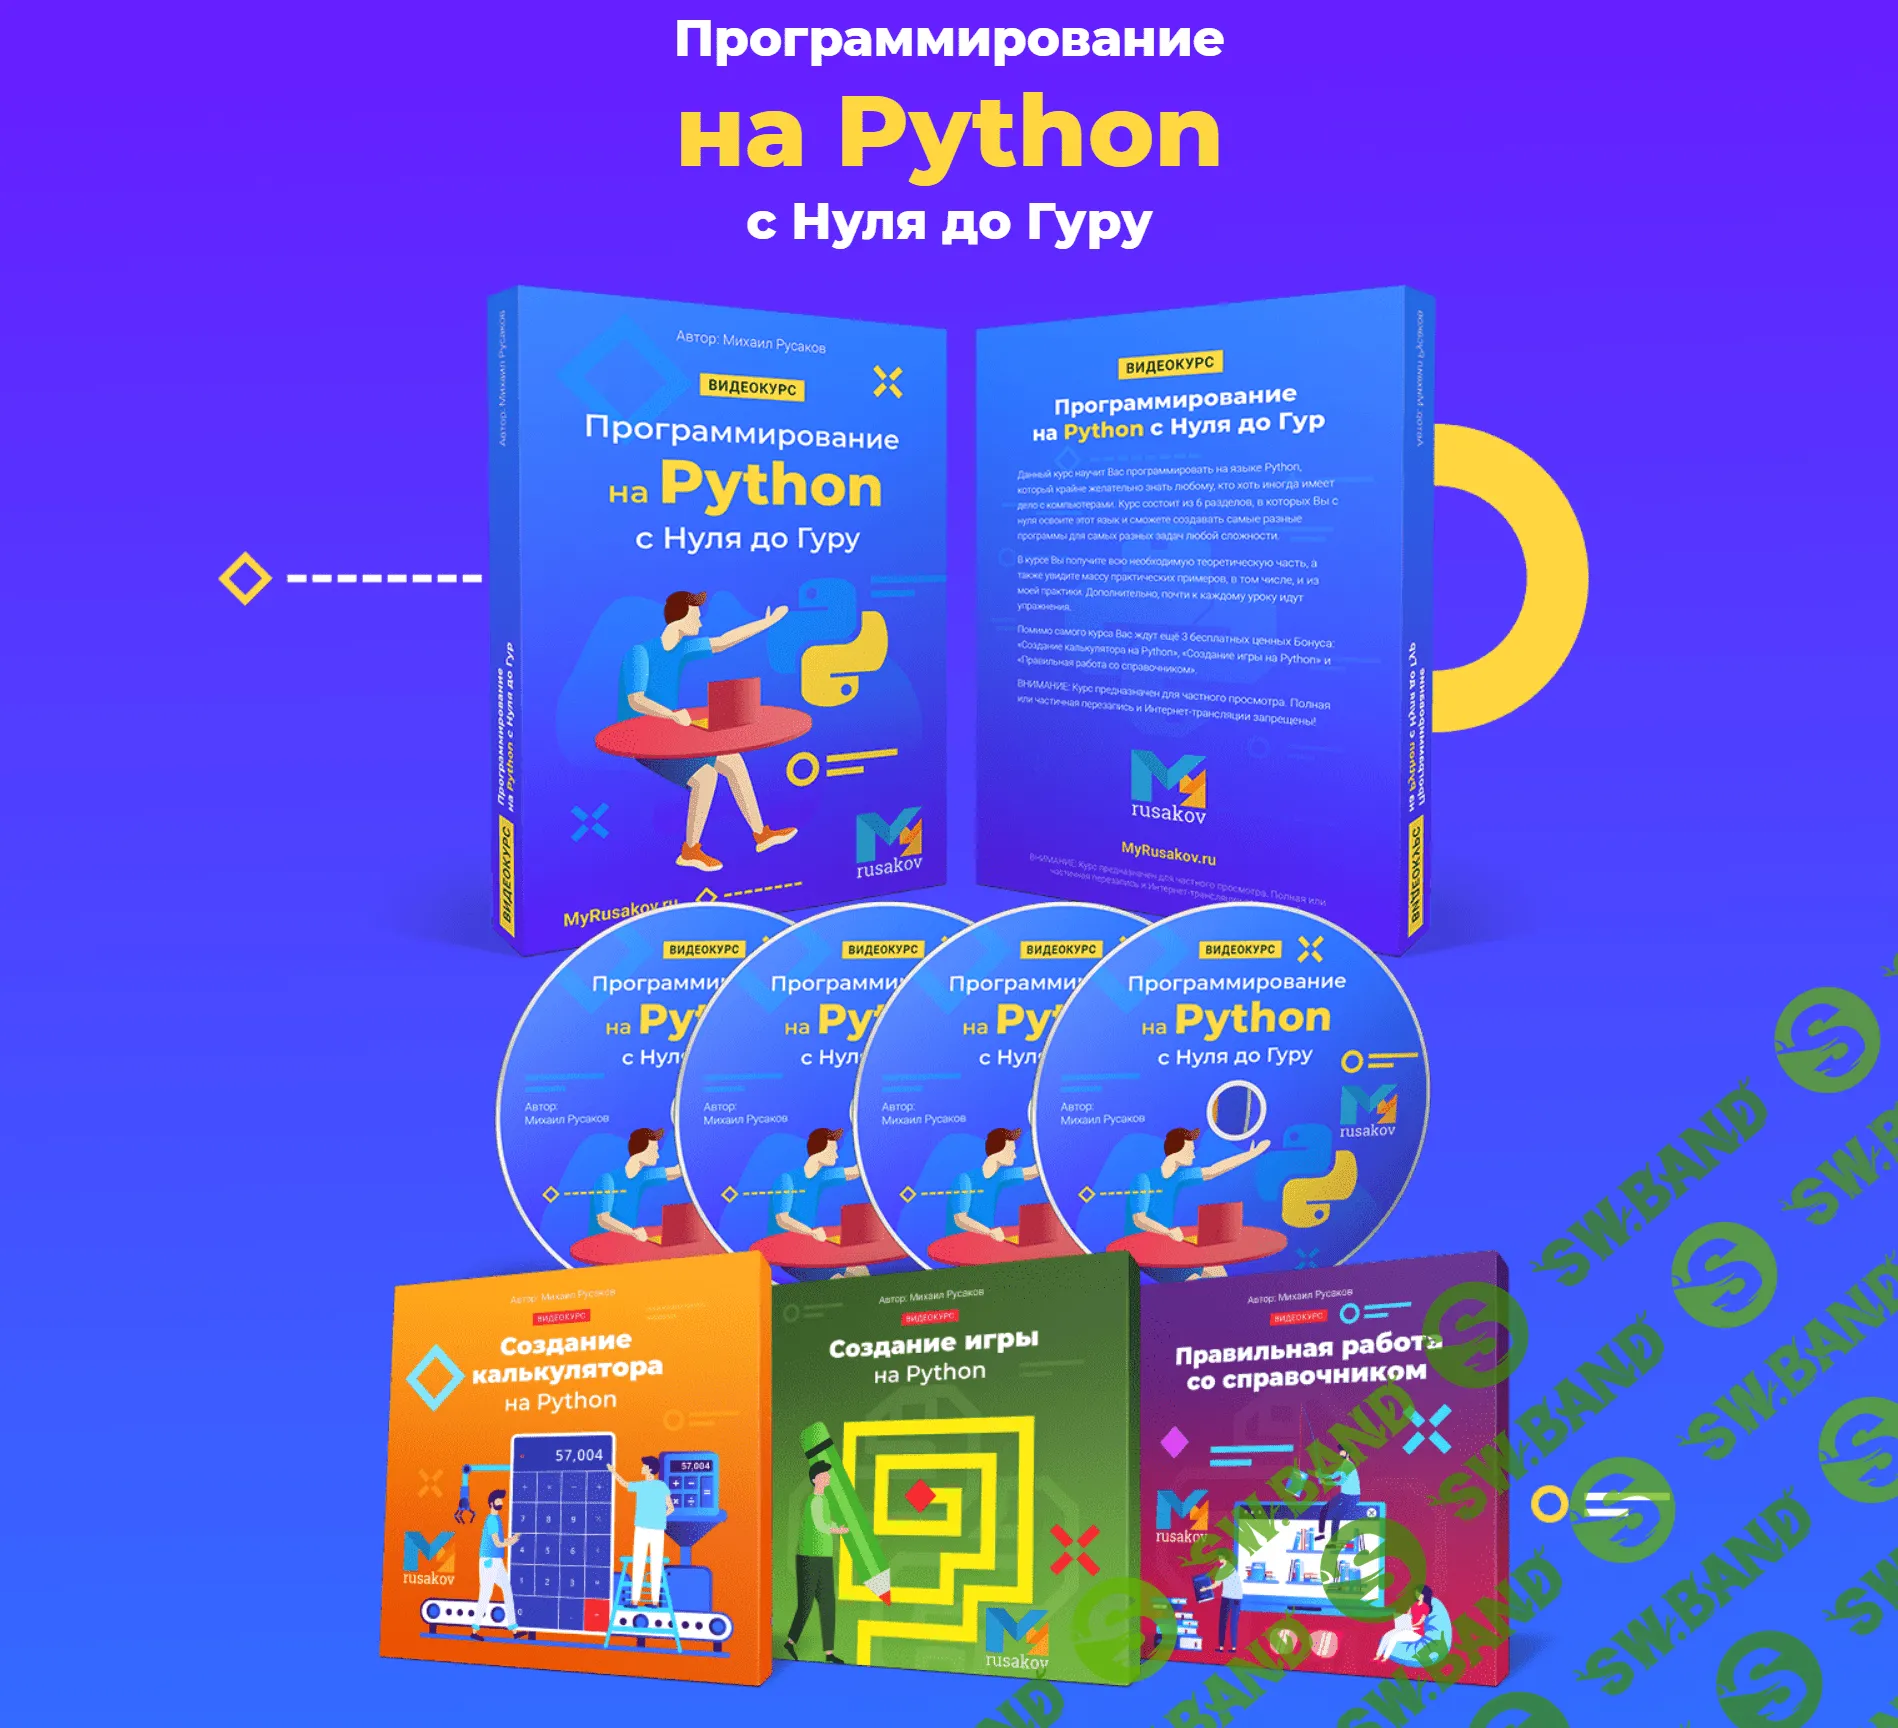 [Михаил Русаков] Программирование на Python с Нуля до Гуру (2020)